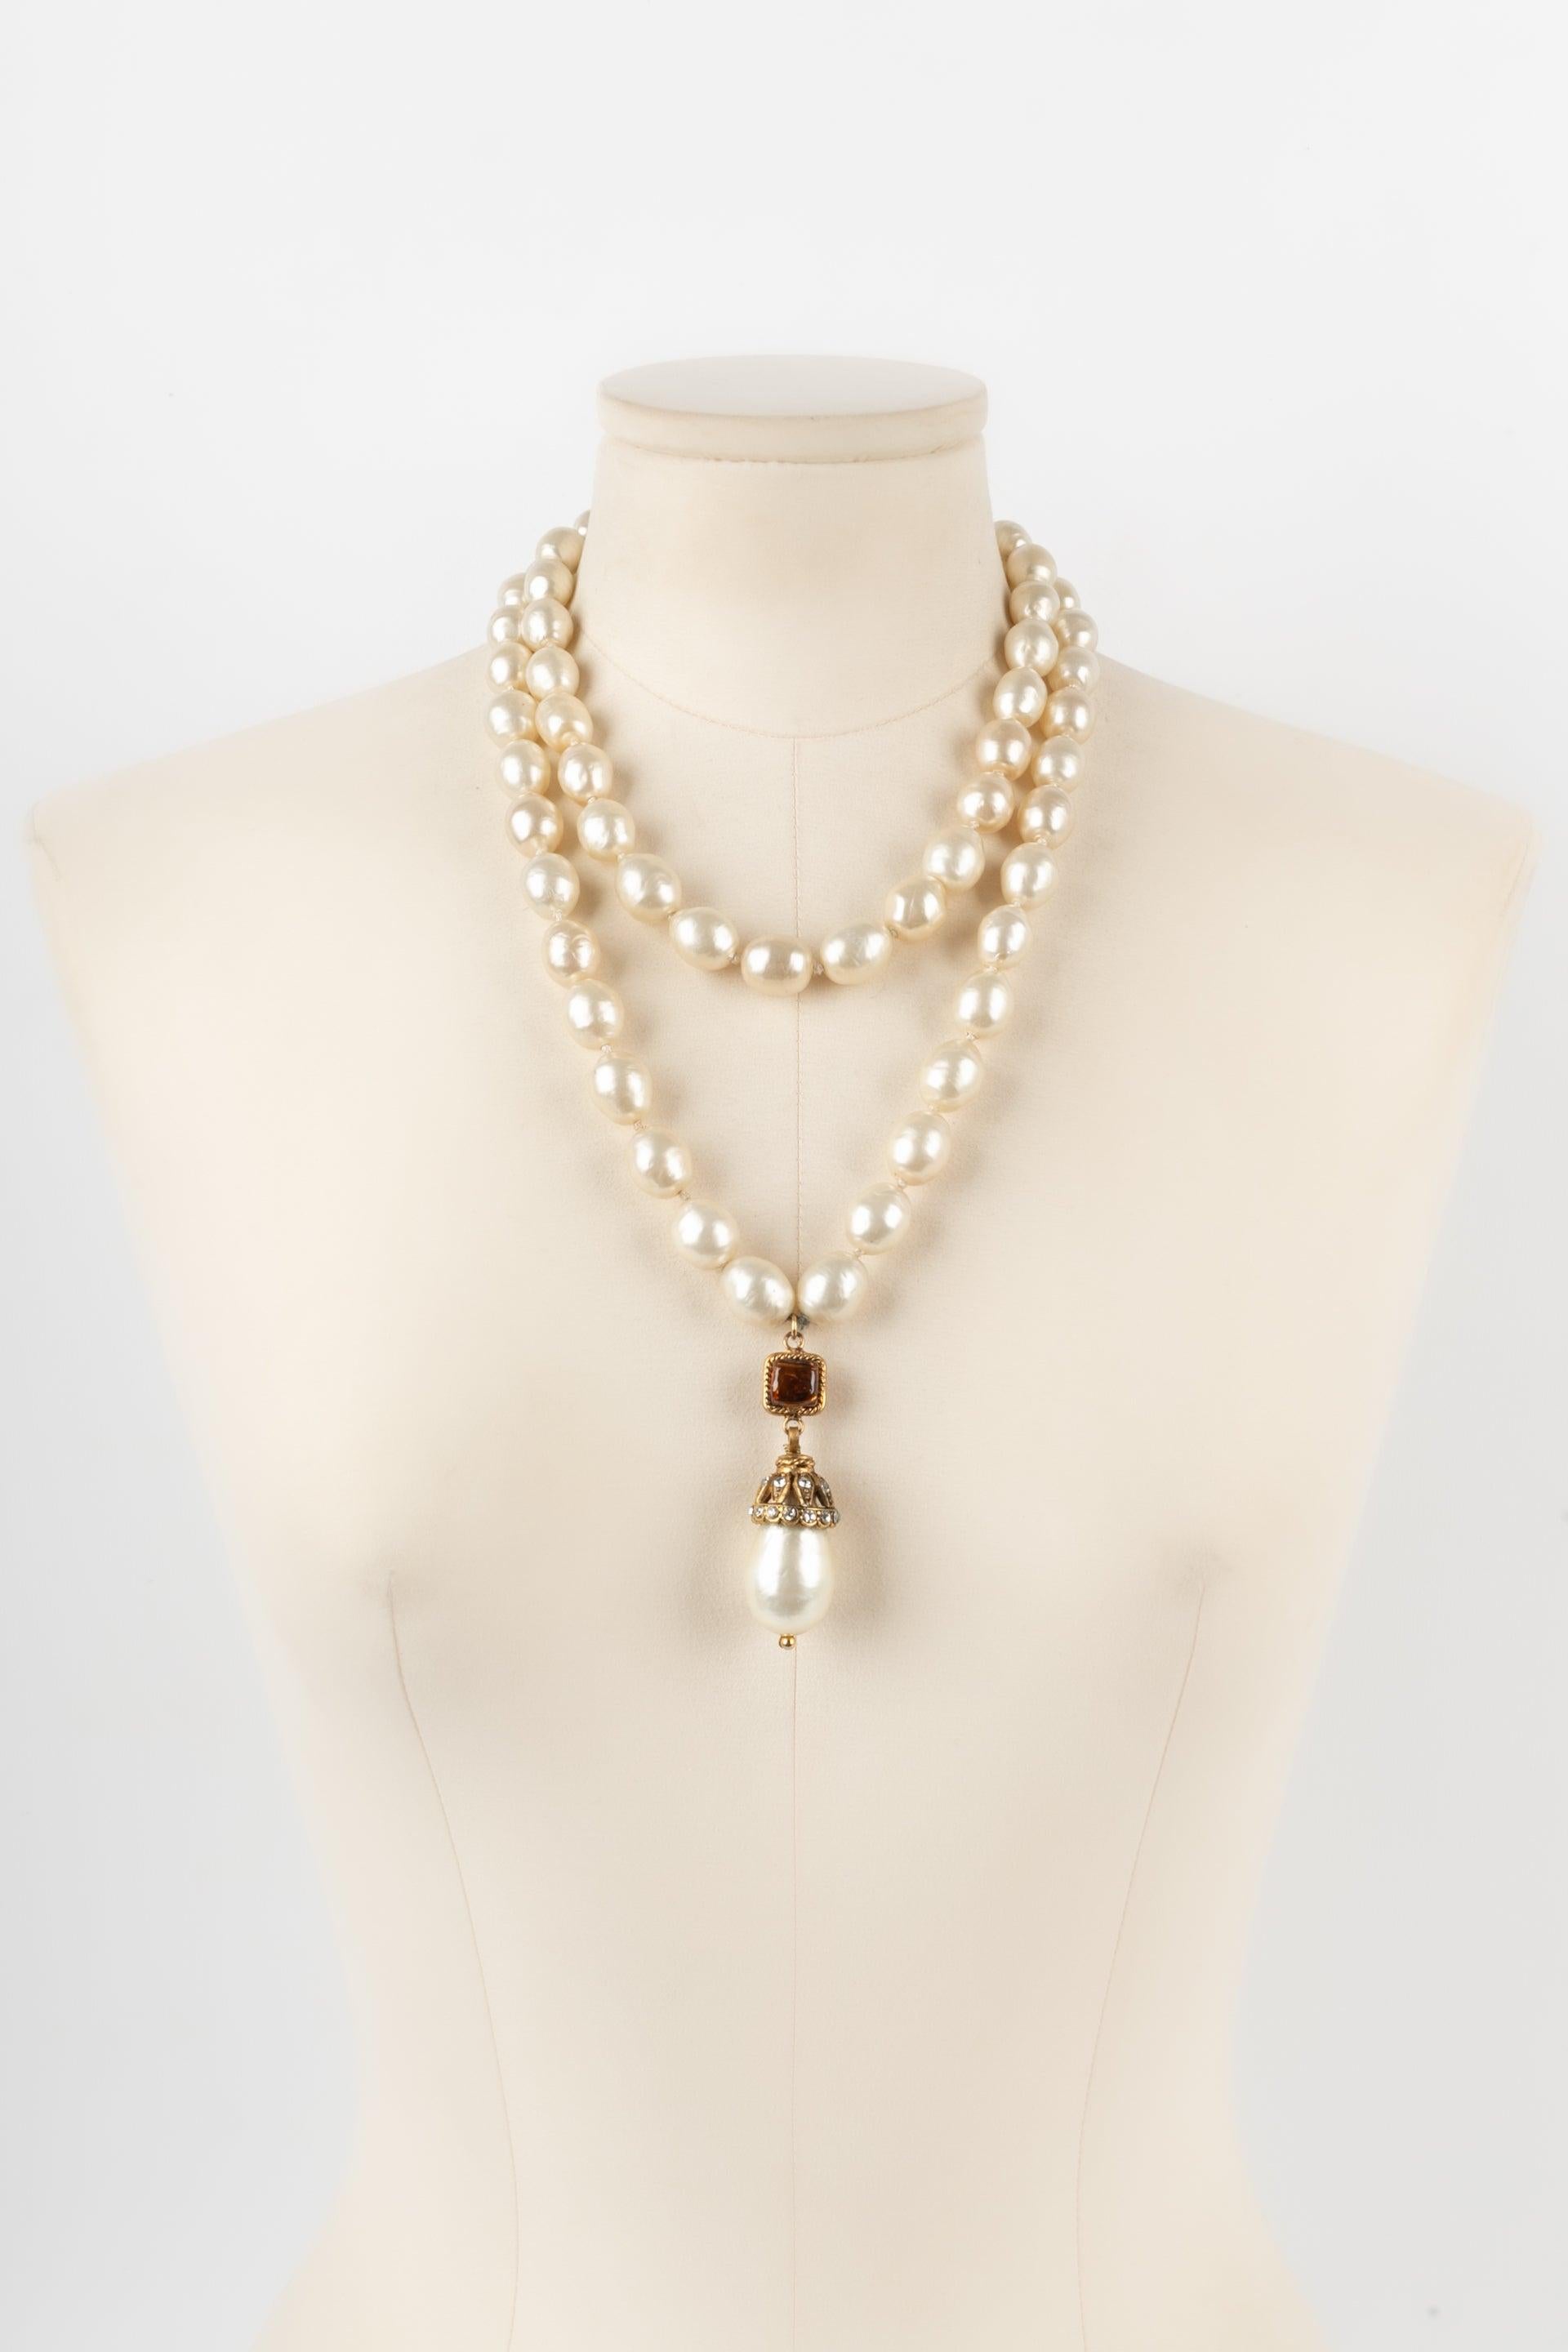 Chanel - (Fabriqué en France) Collier composé de deux rangs de perles fantaisie assemblées par nœuds, d'un pendentif, d'une attache en métal doré, et de pâte de verre. Bijoux des années 1980.

Informations complémentaires :
Condit : Très bon